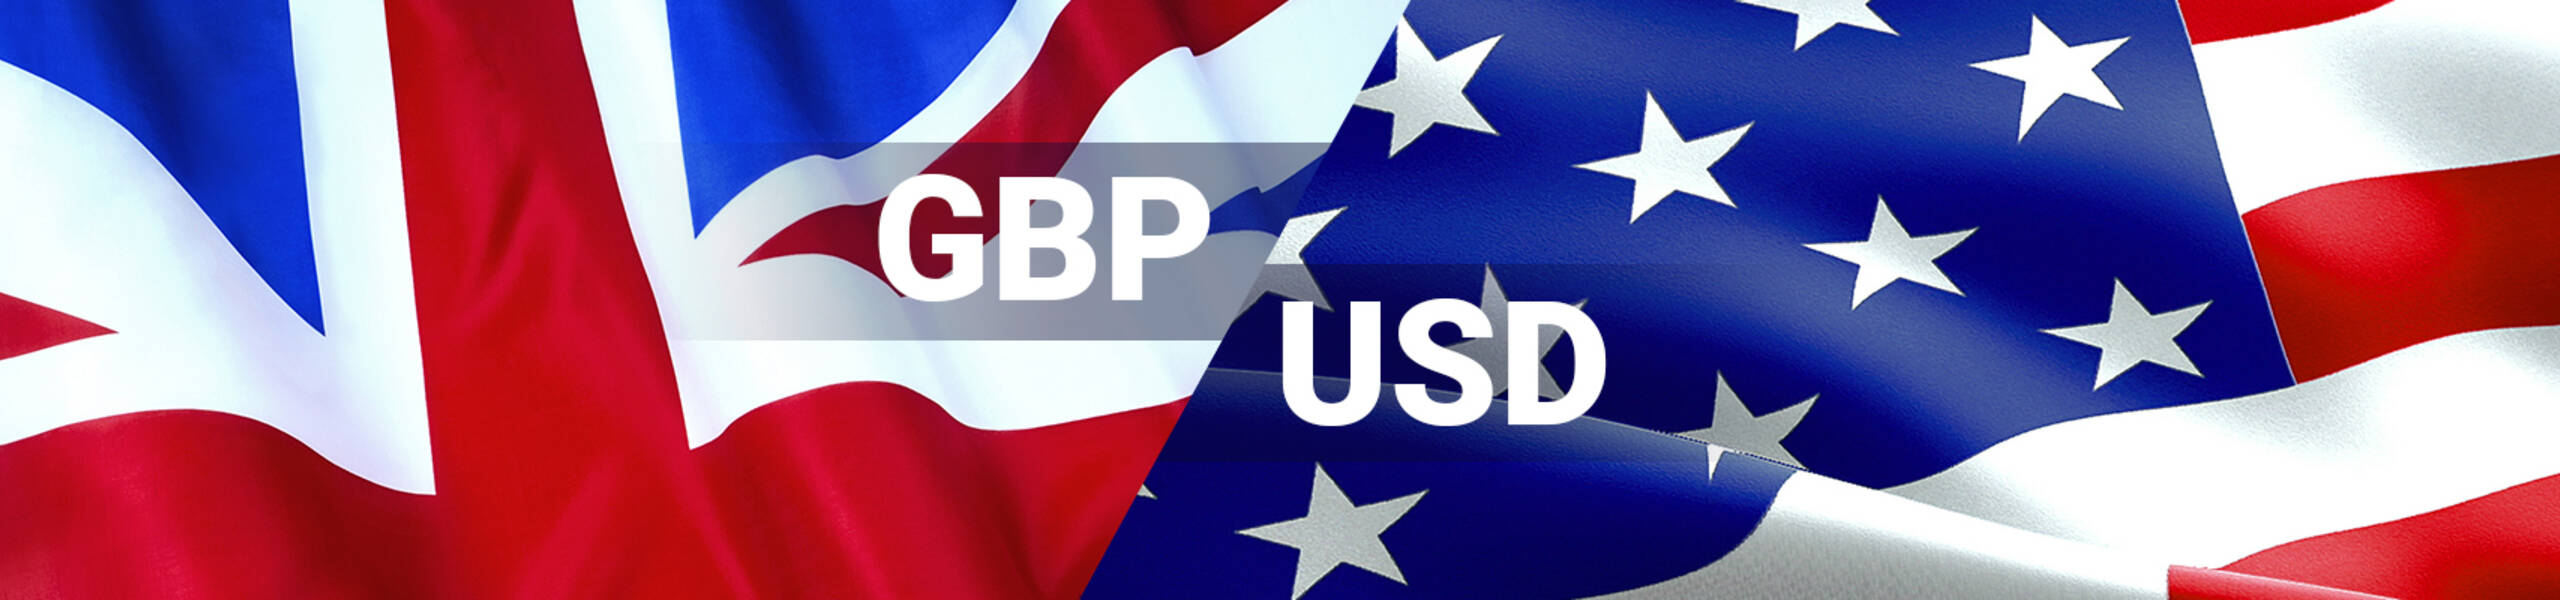 GBP/USD con proyecciones bajistas hacia 1.2471